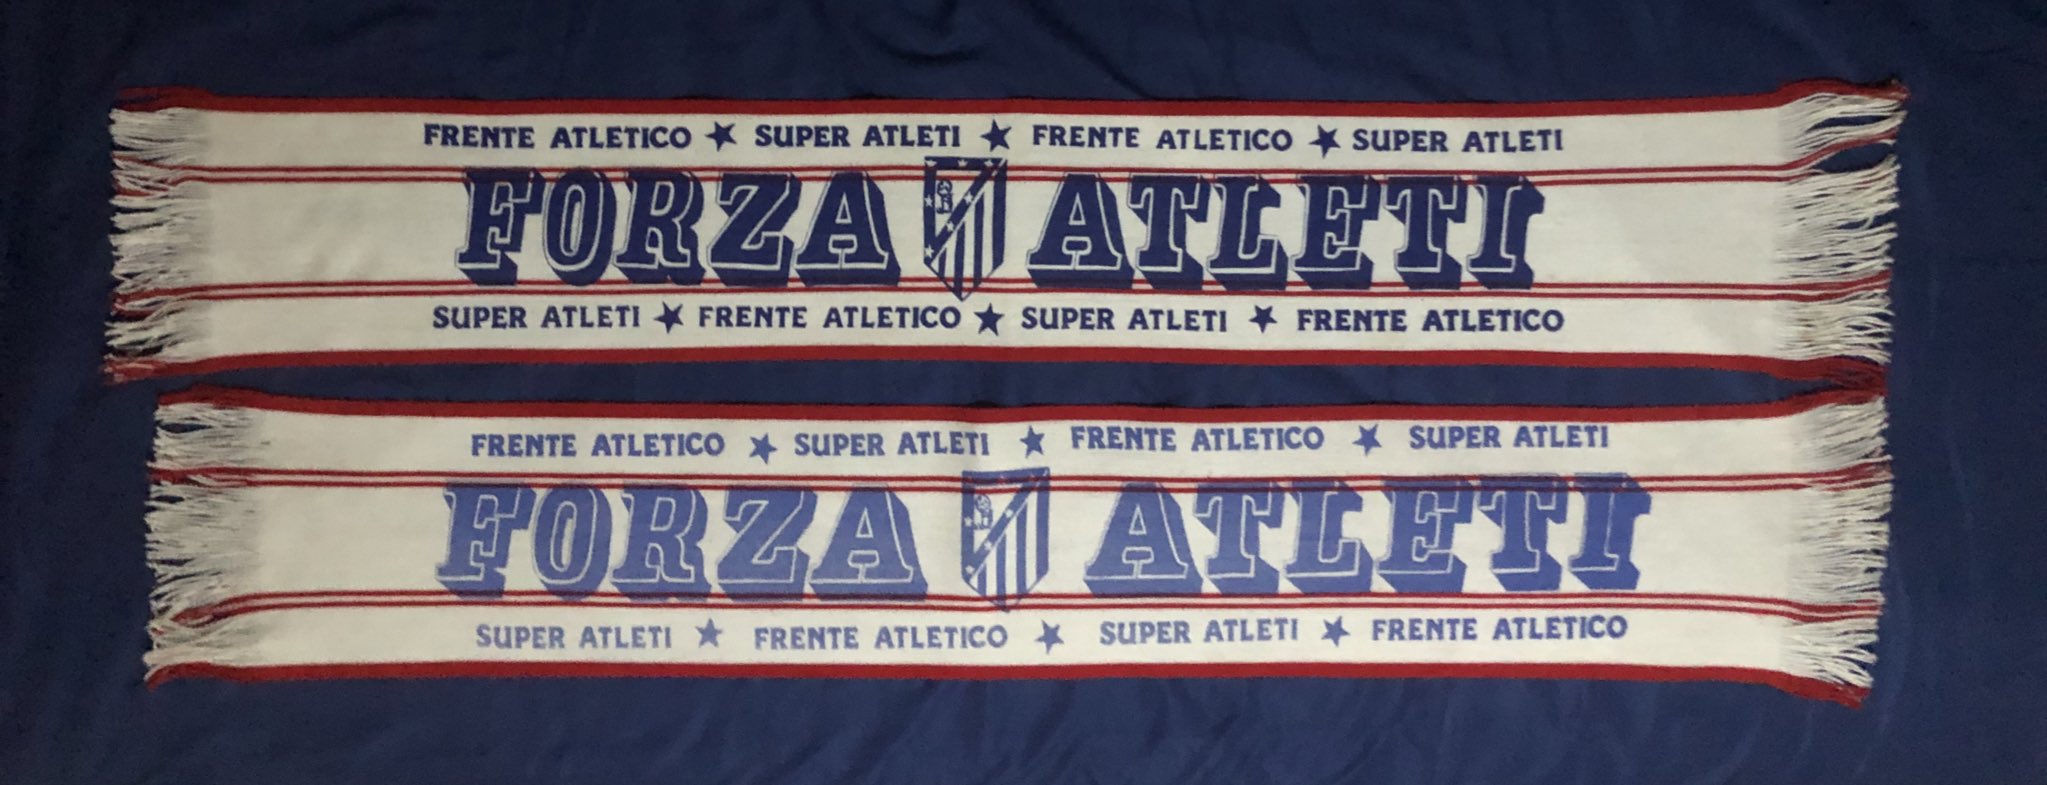 Bufandas y material del Atlético de Madrid (@bufandeo) / X